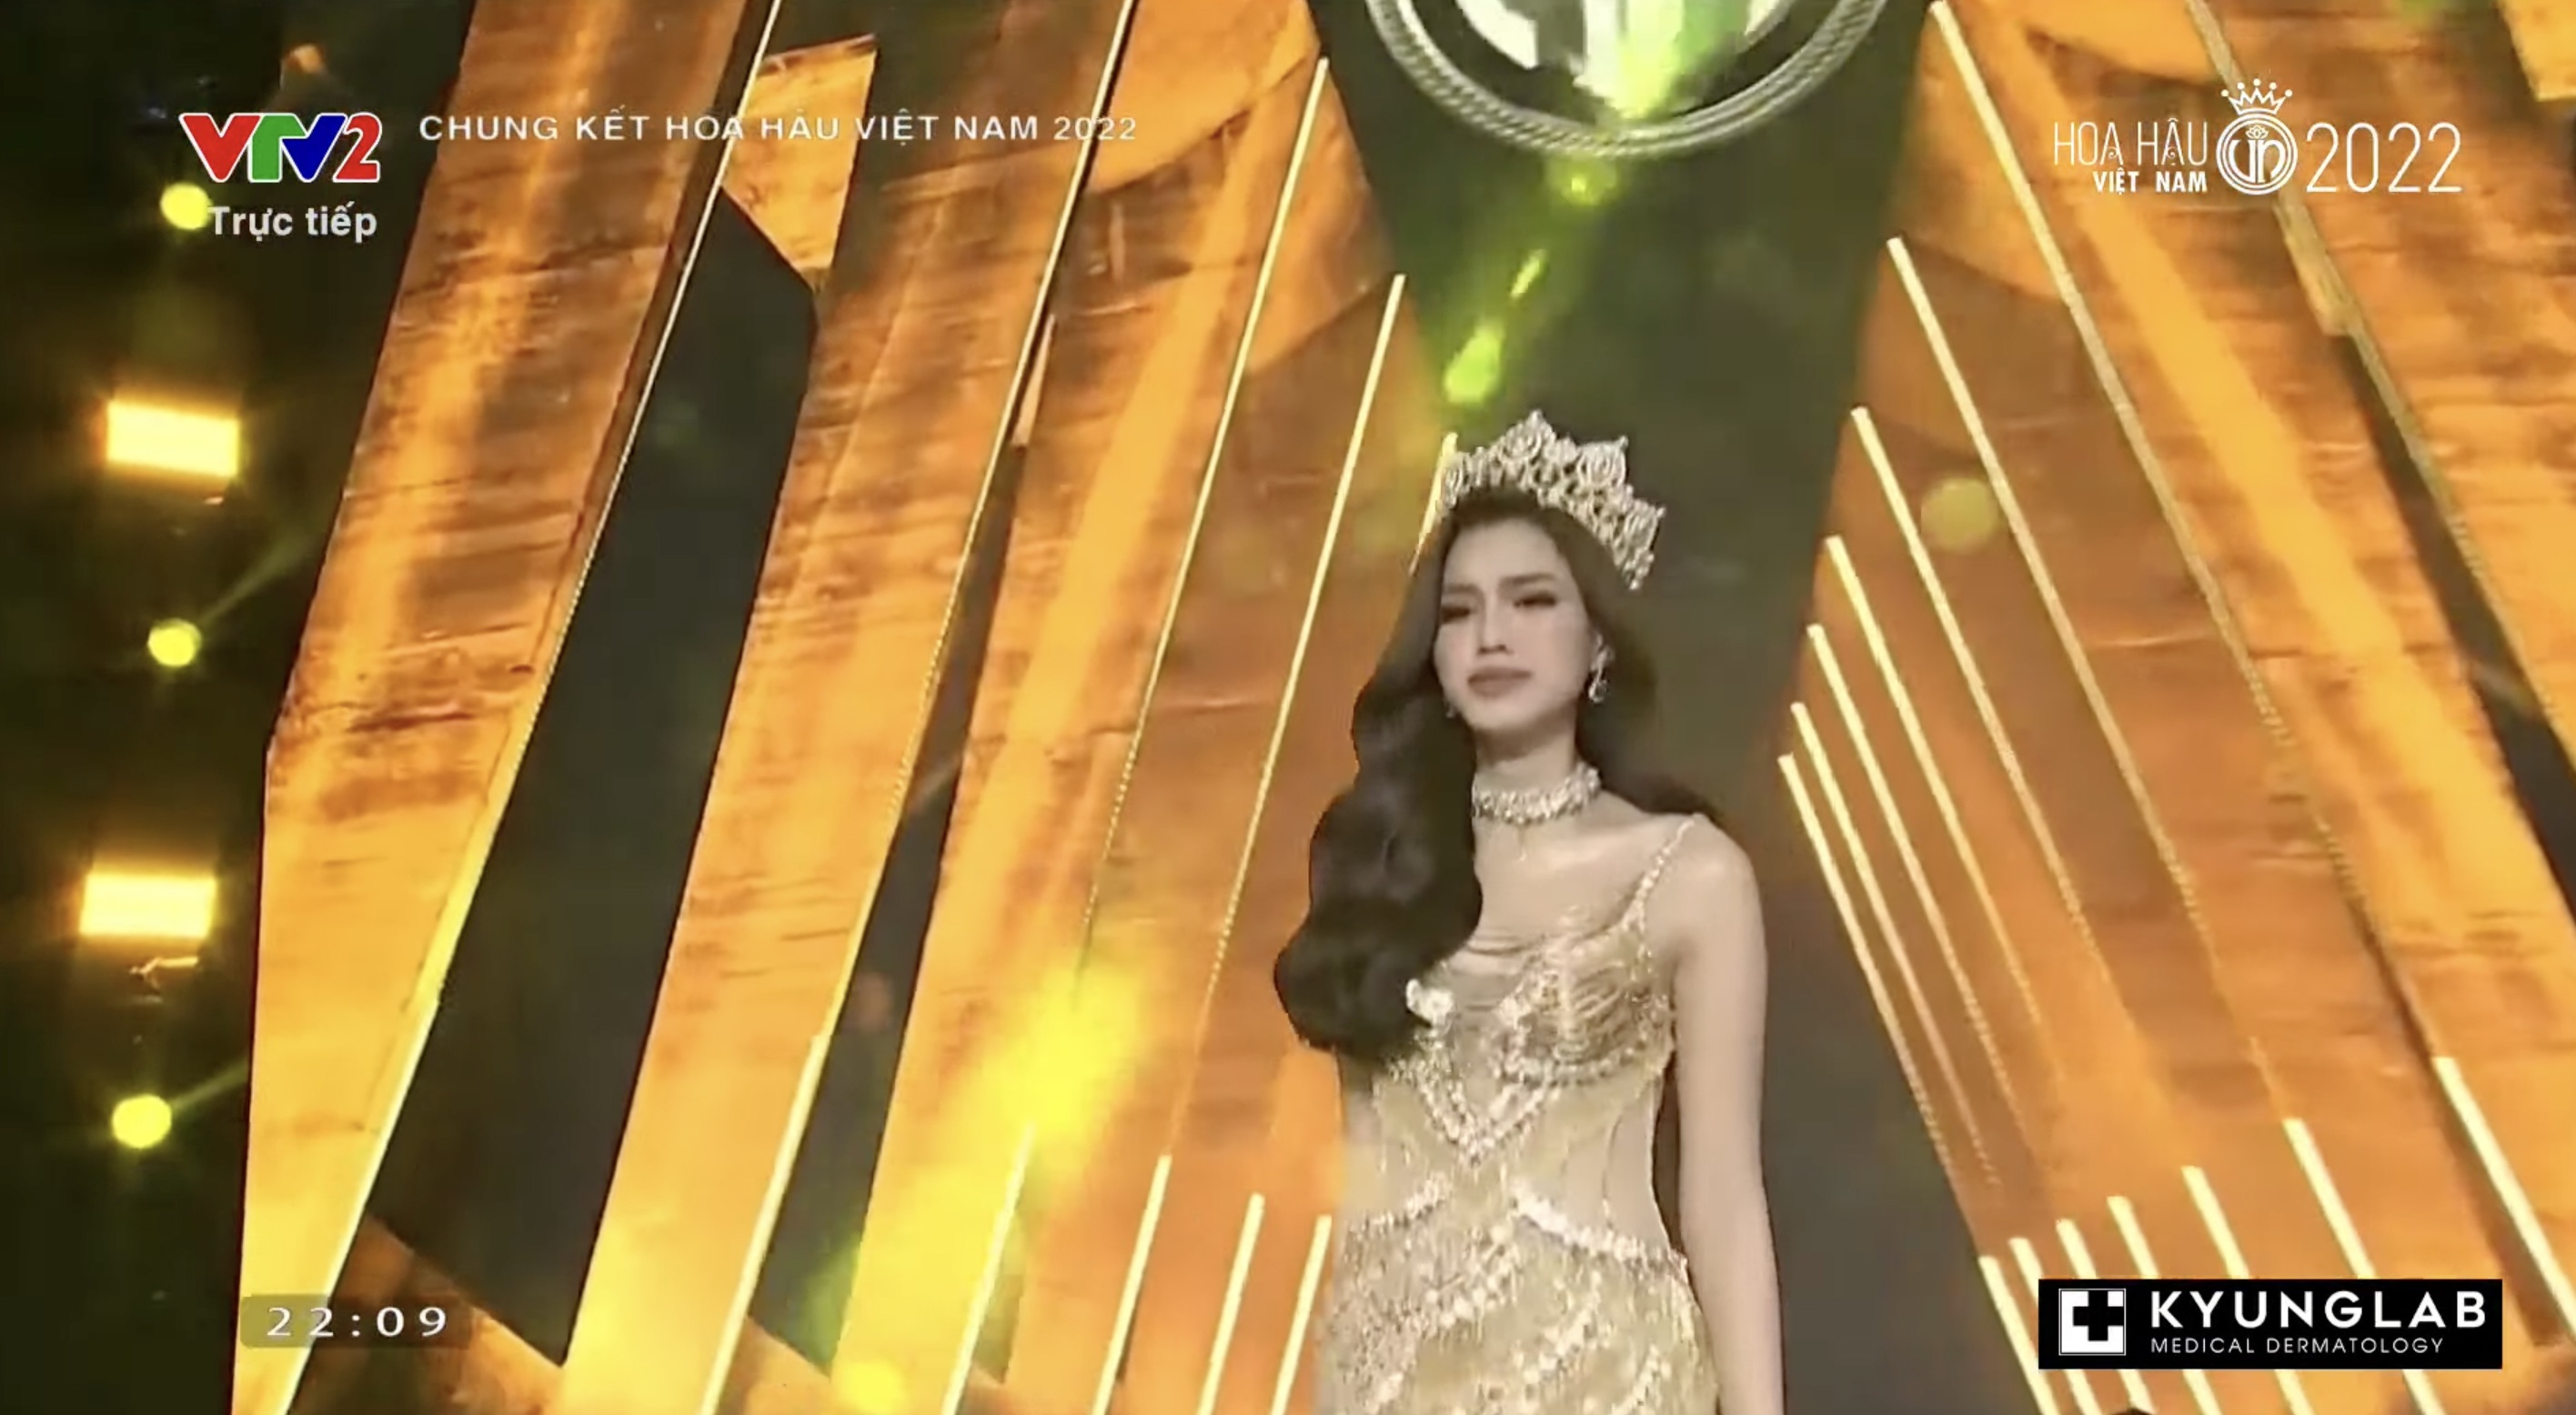 Chung kết Hoa hậu Việt Nam 2022: Tân Hoa hậu chính thức gọi tên Huỳnh Thị Thanh Thuỷ - 11